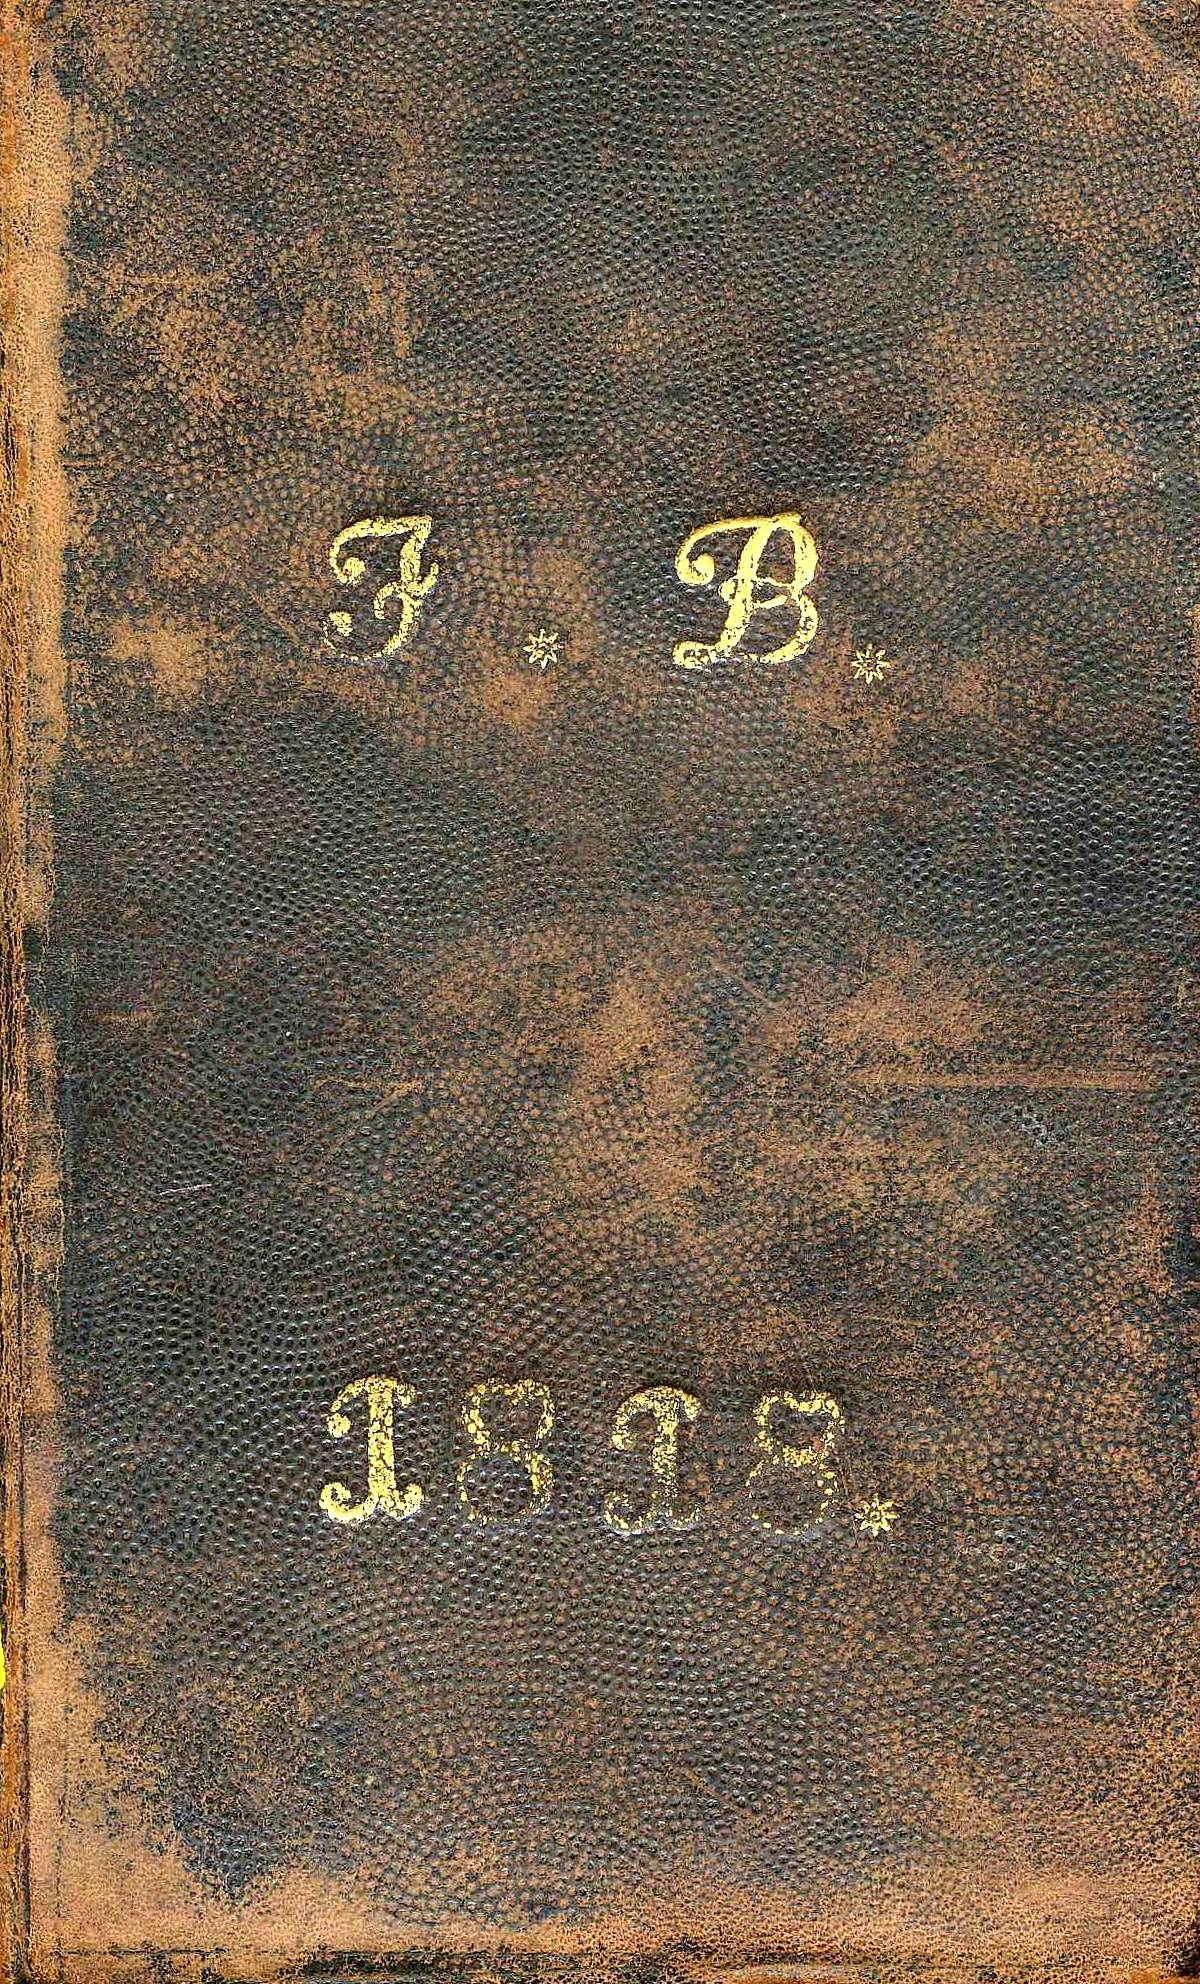 Gesangbuch, Verlag der Faberschen Buchdruckerey 1807 (Börde-Museum Burg Ummendorf RR-F)